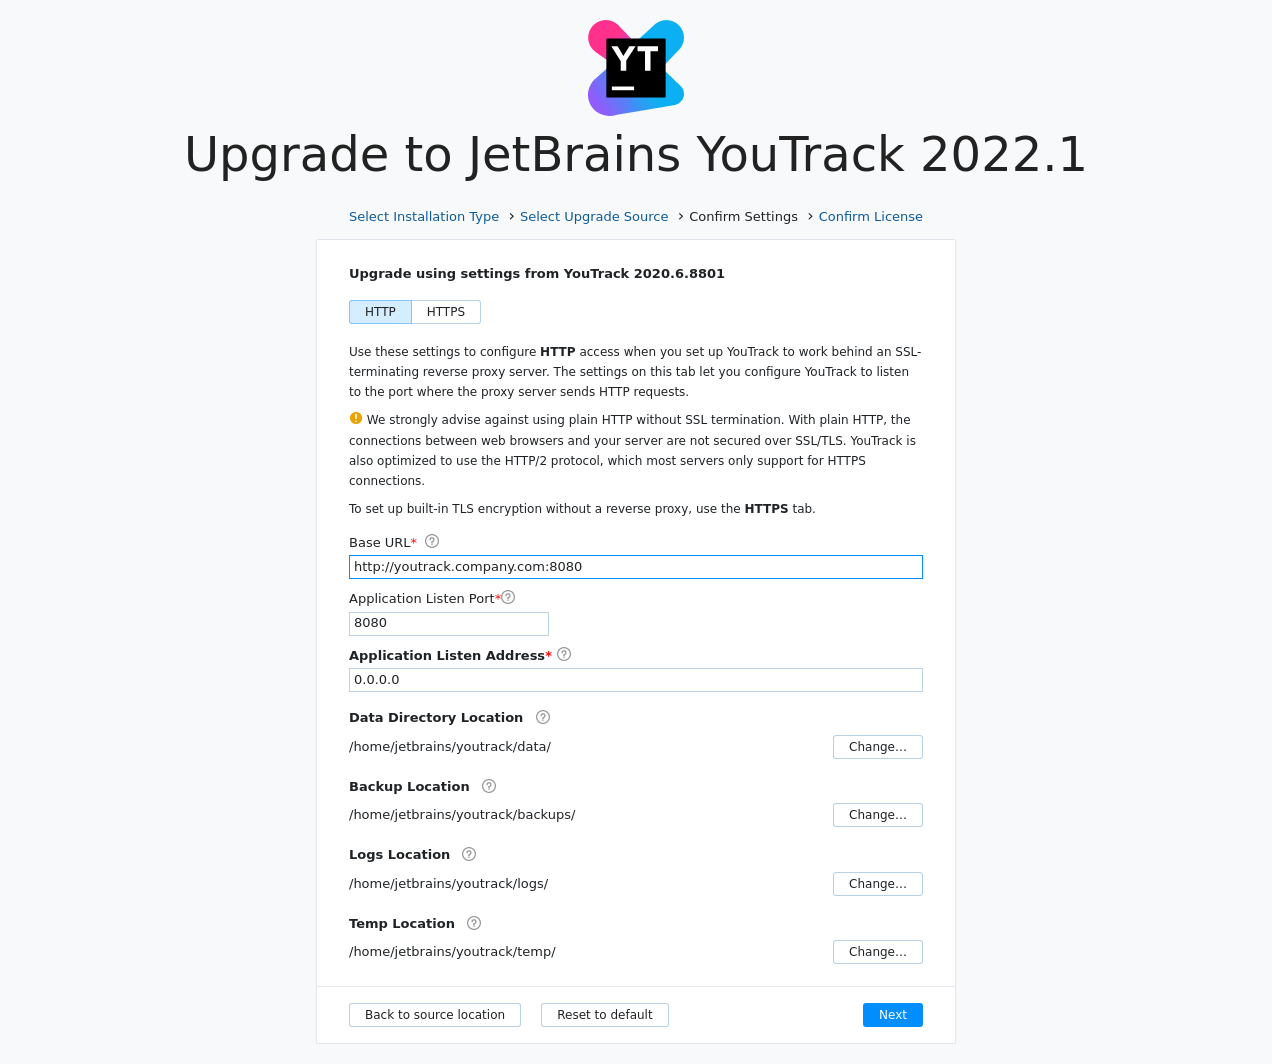 Youtrack zip upgrade settings